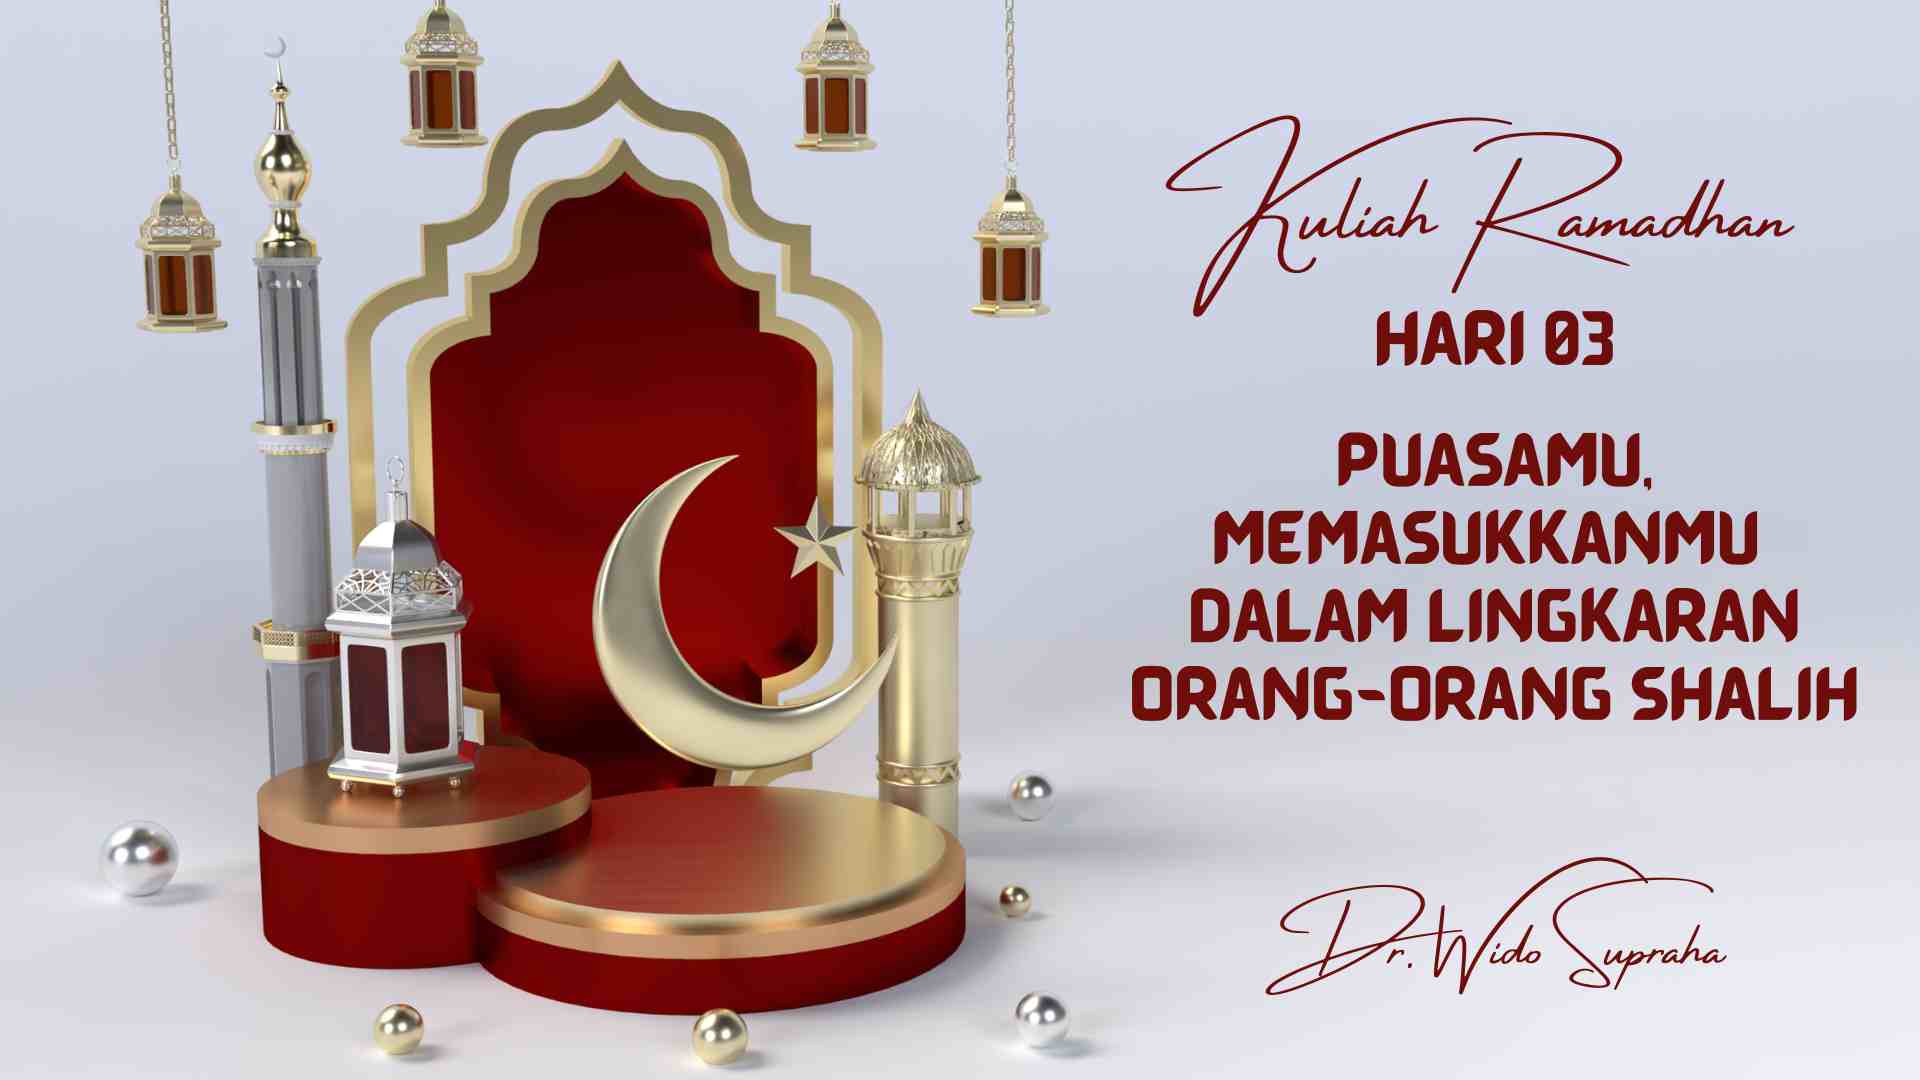 Kuliah Ramadhan 03: Puasamu, Memasukkanmu Dalam Lingkaran Orang-orang Shalih